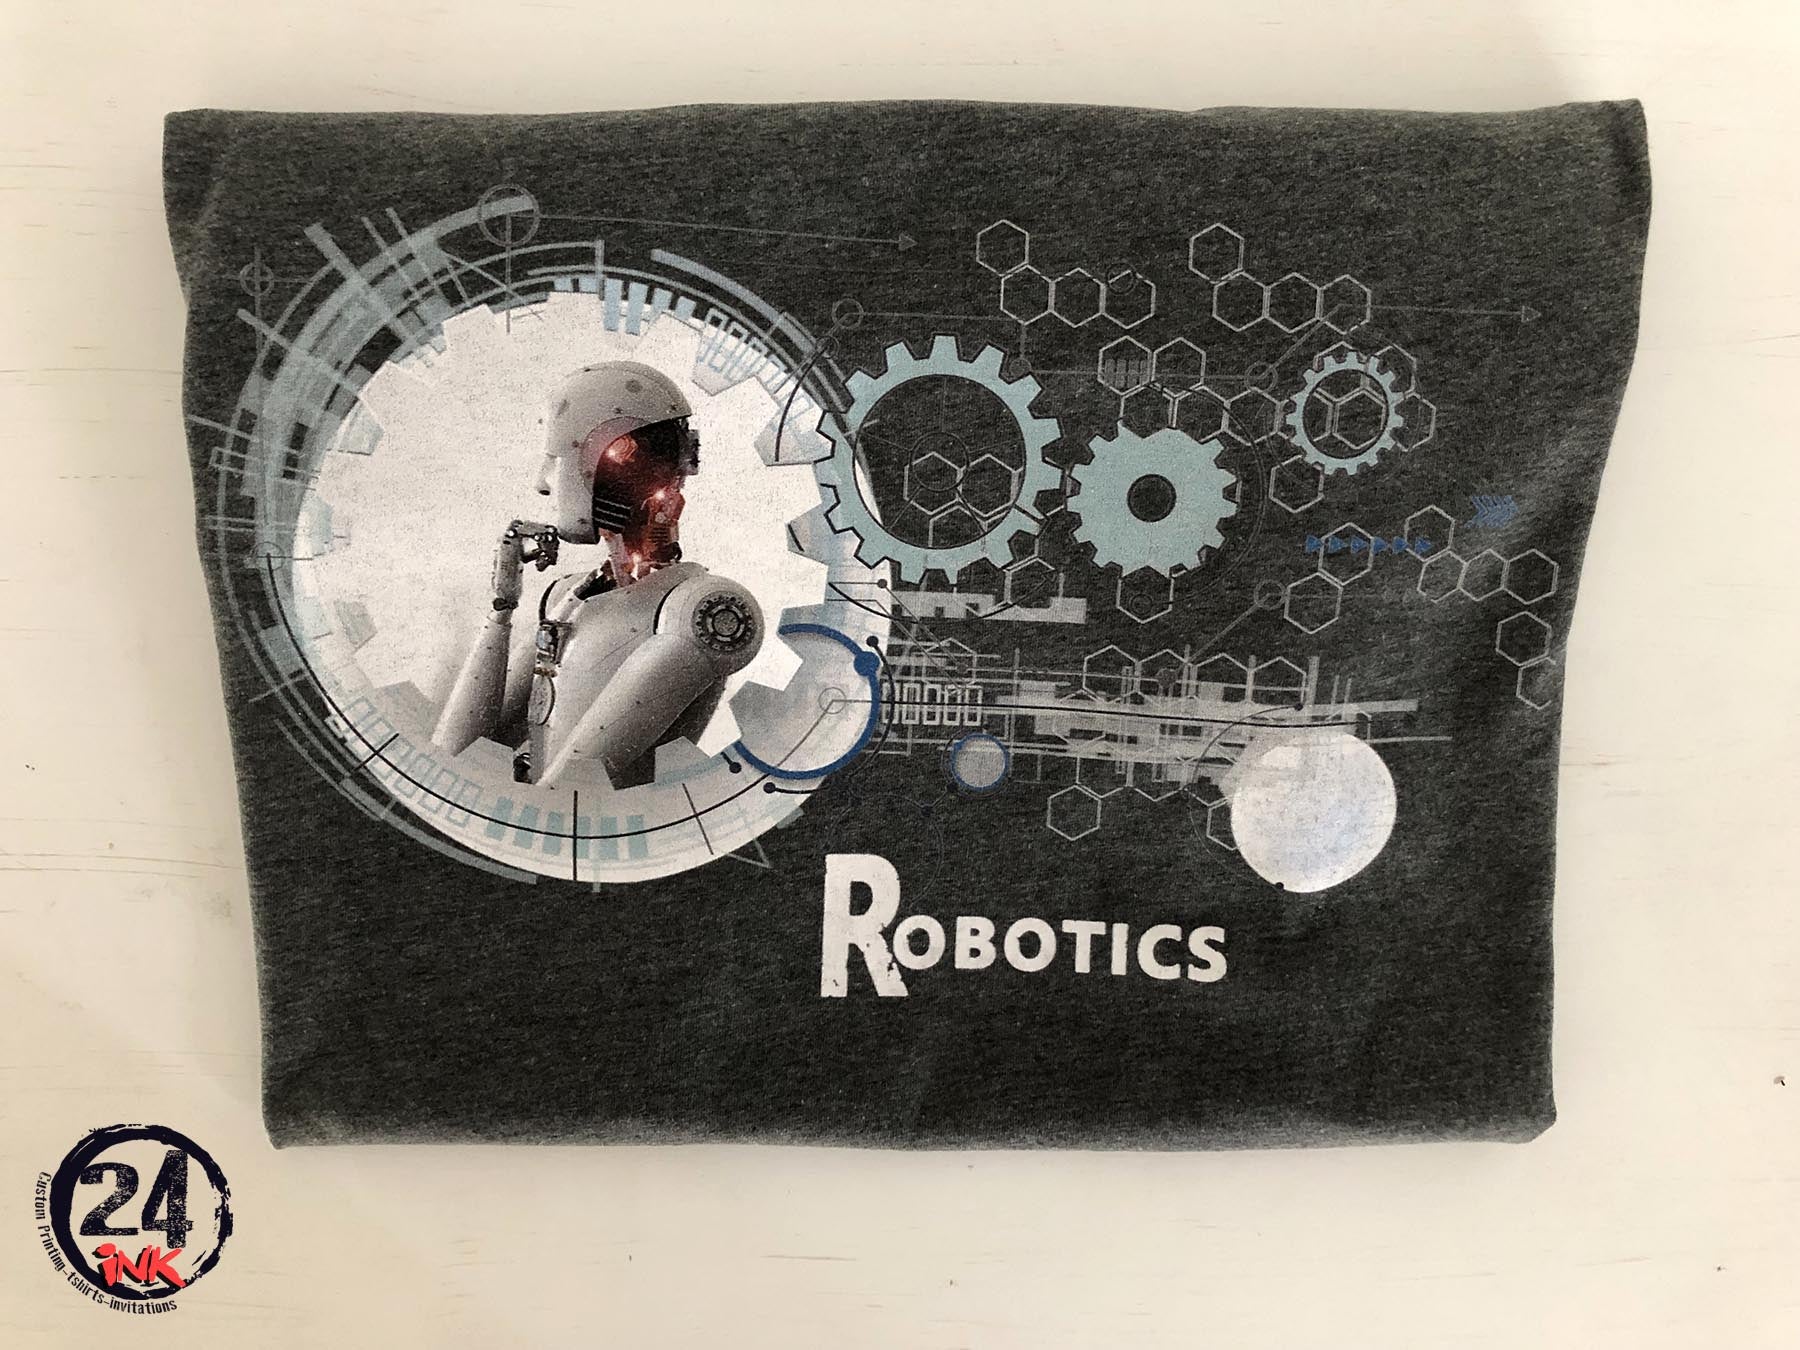 Robotics club t-shirt